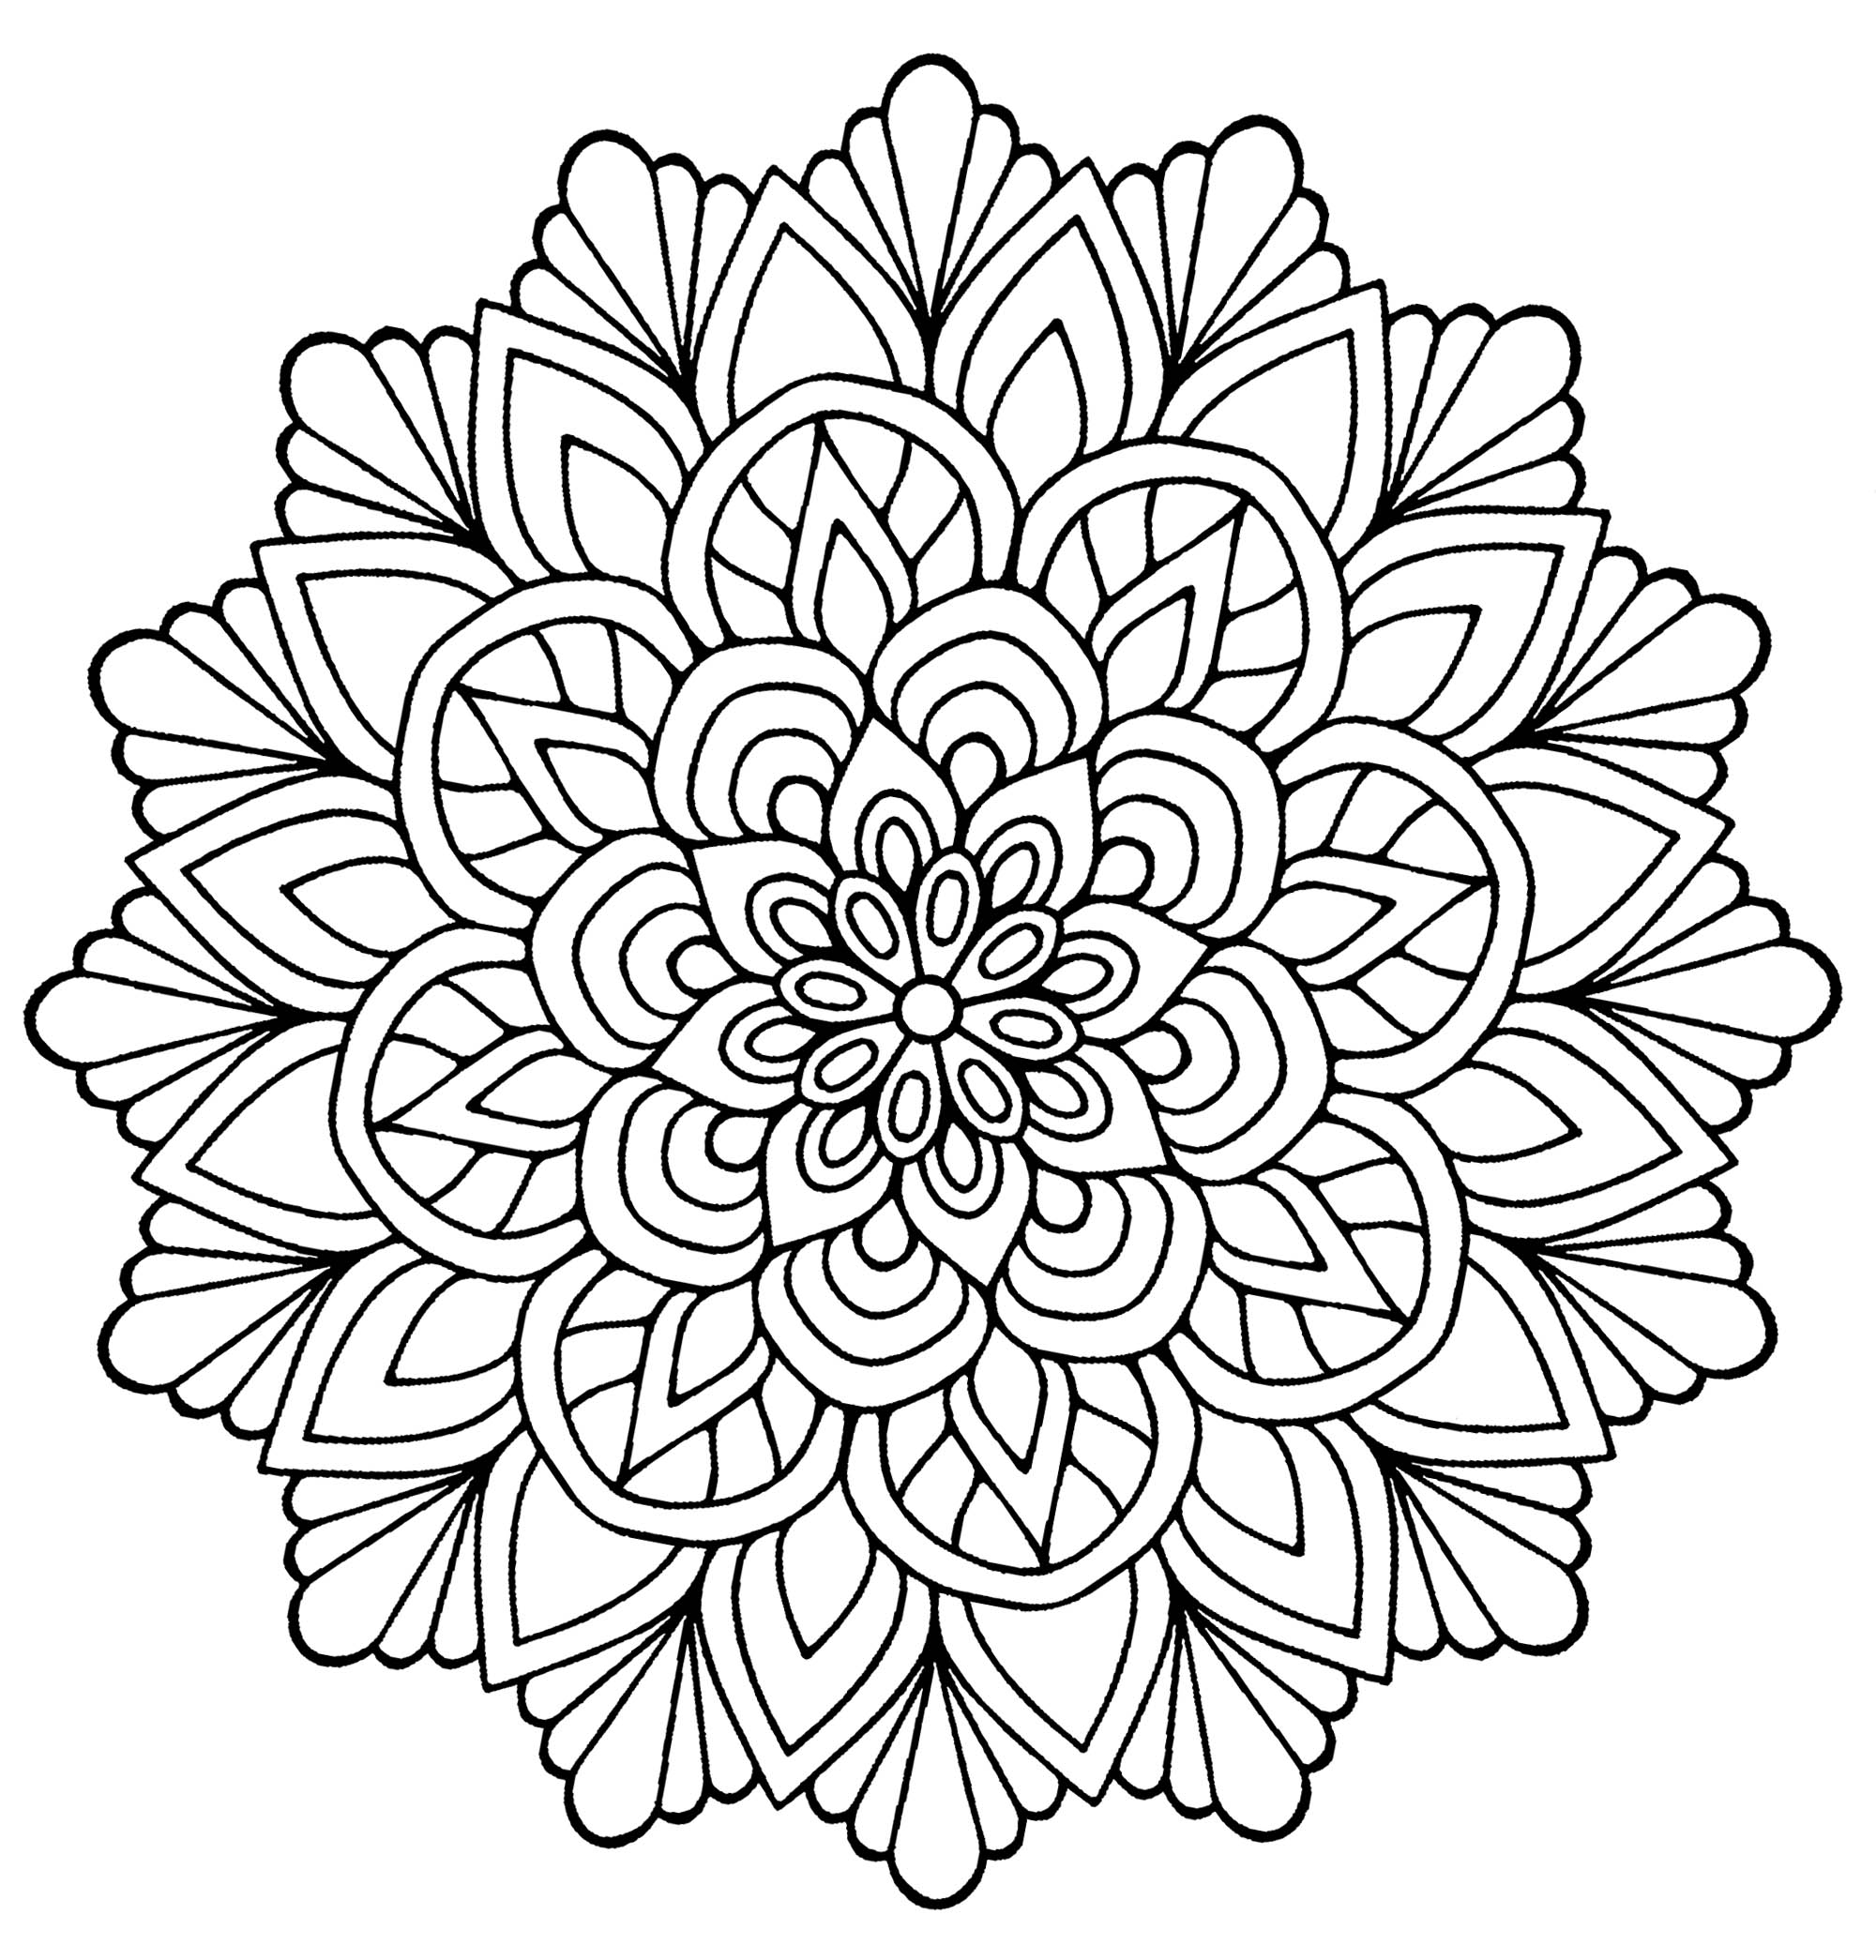 Uma bela mandala para colorir, parecendo uma flor com folhas